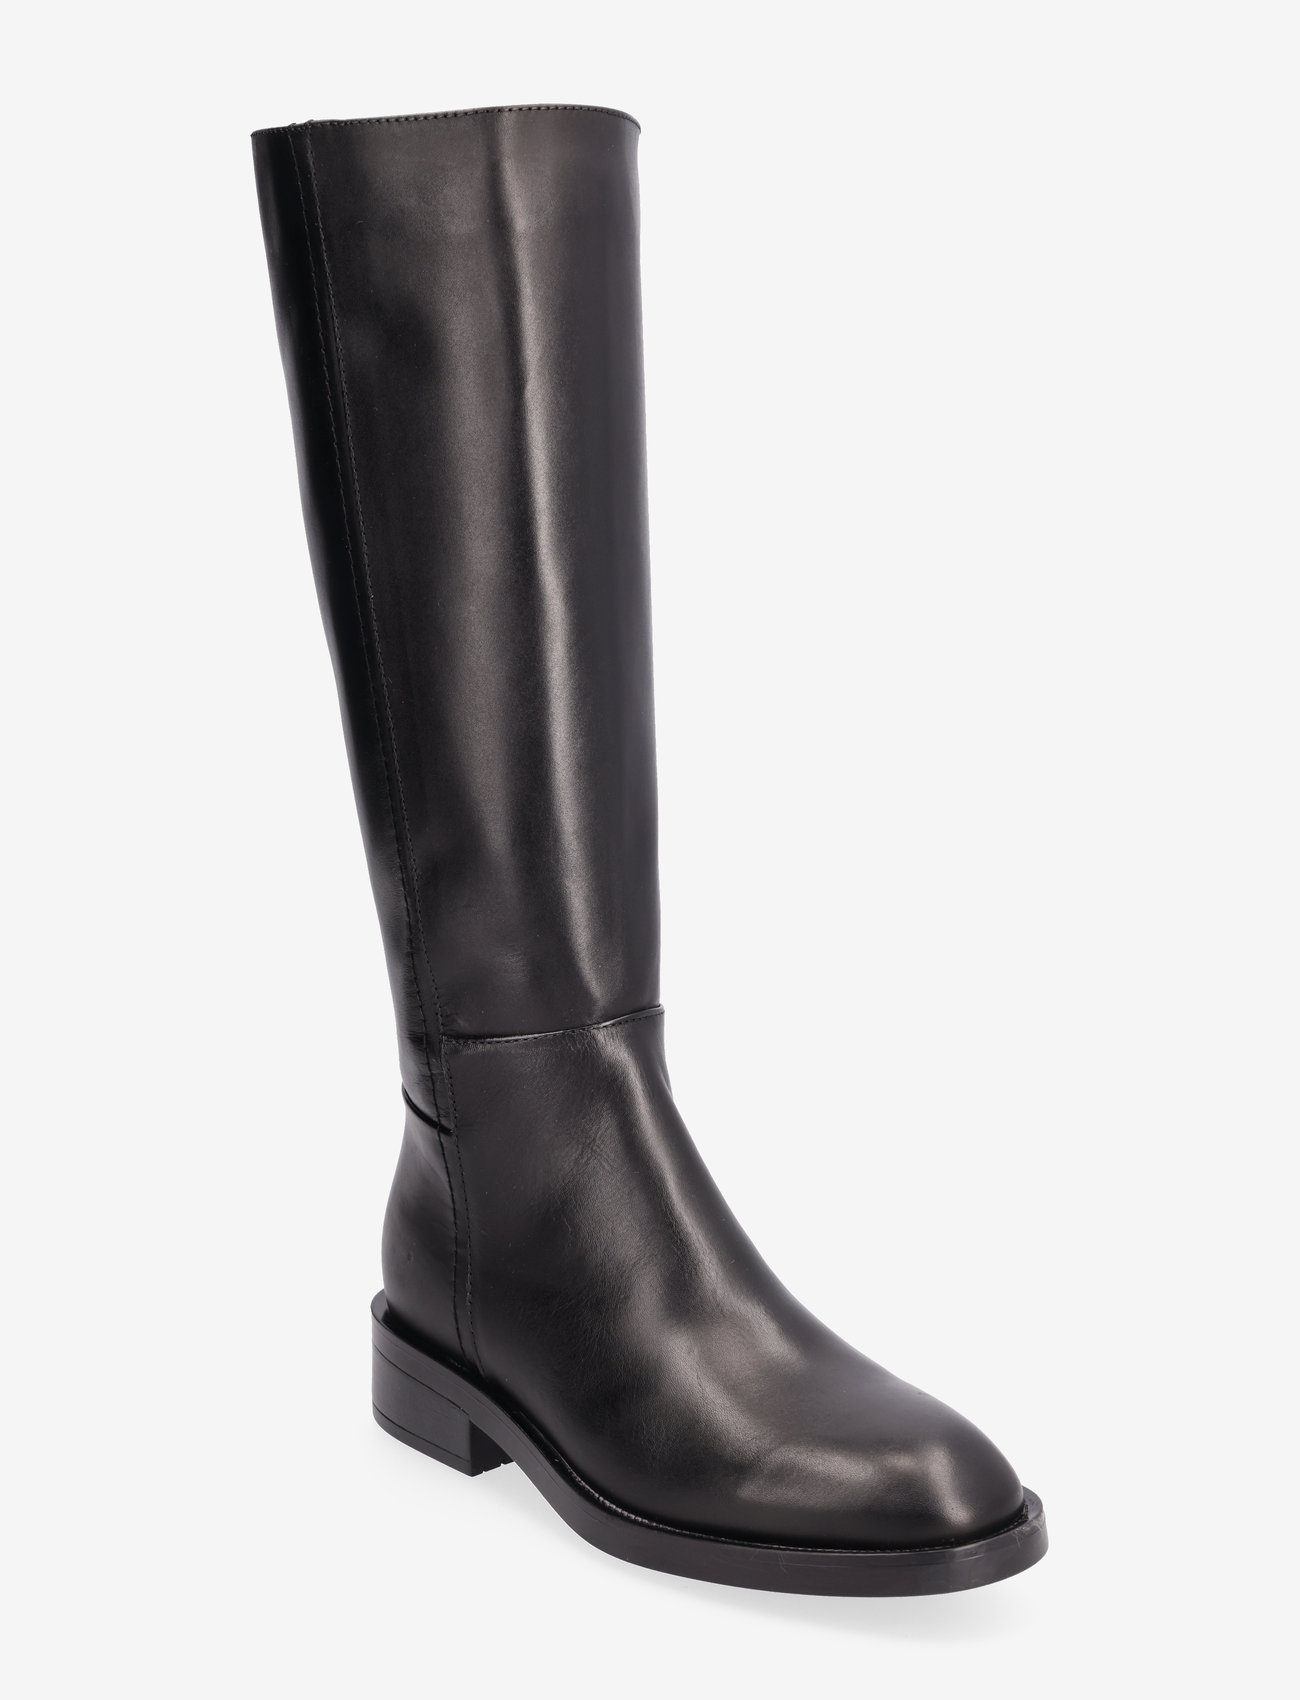 Tamaris - Women Boots - höga stövlar - black - 0